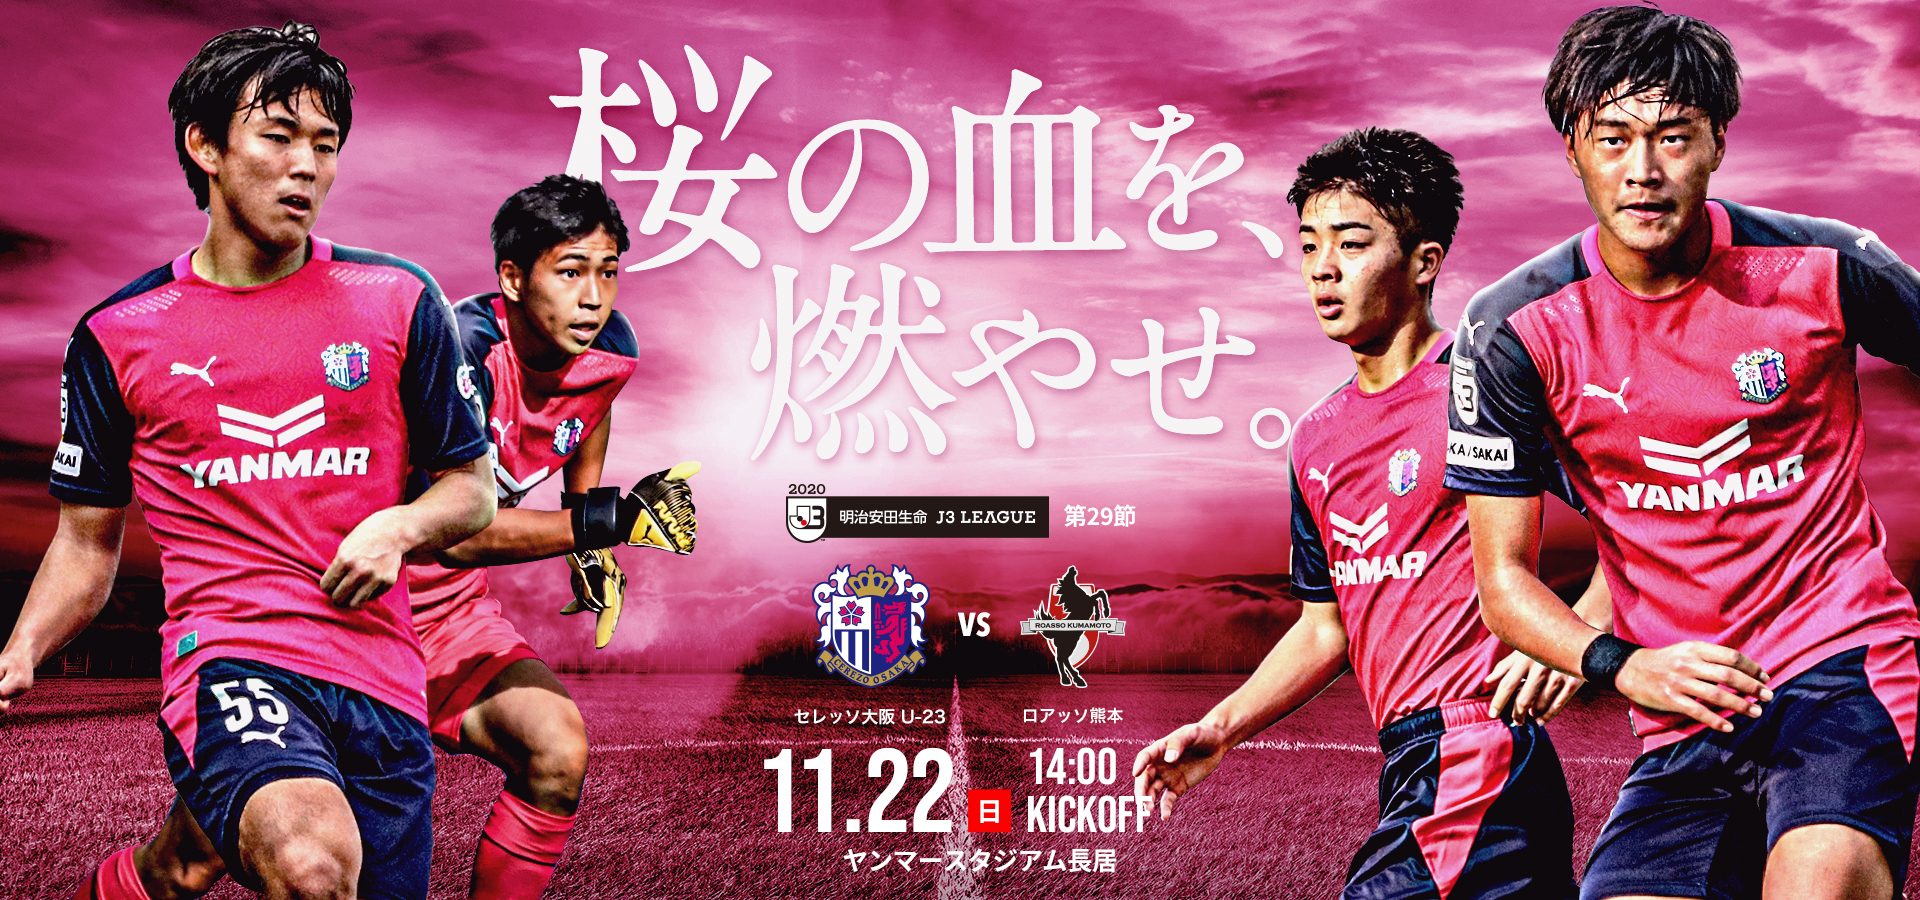 11 22 熊本戦 ホームゲームトピックス セレッソ大阪オフィシャルウェブサイト Cerezo Osaka